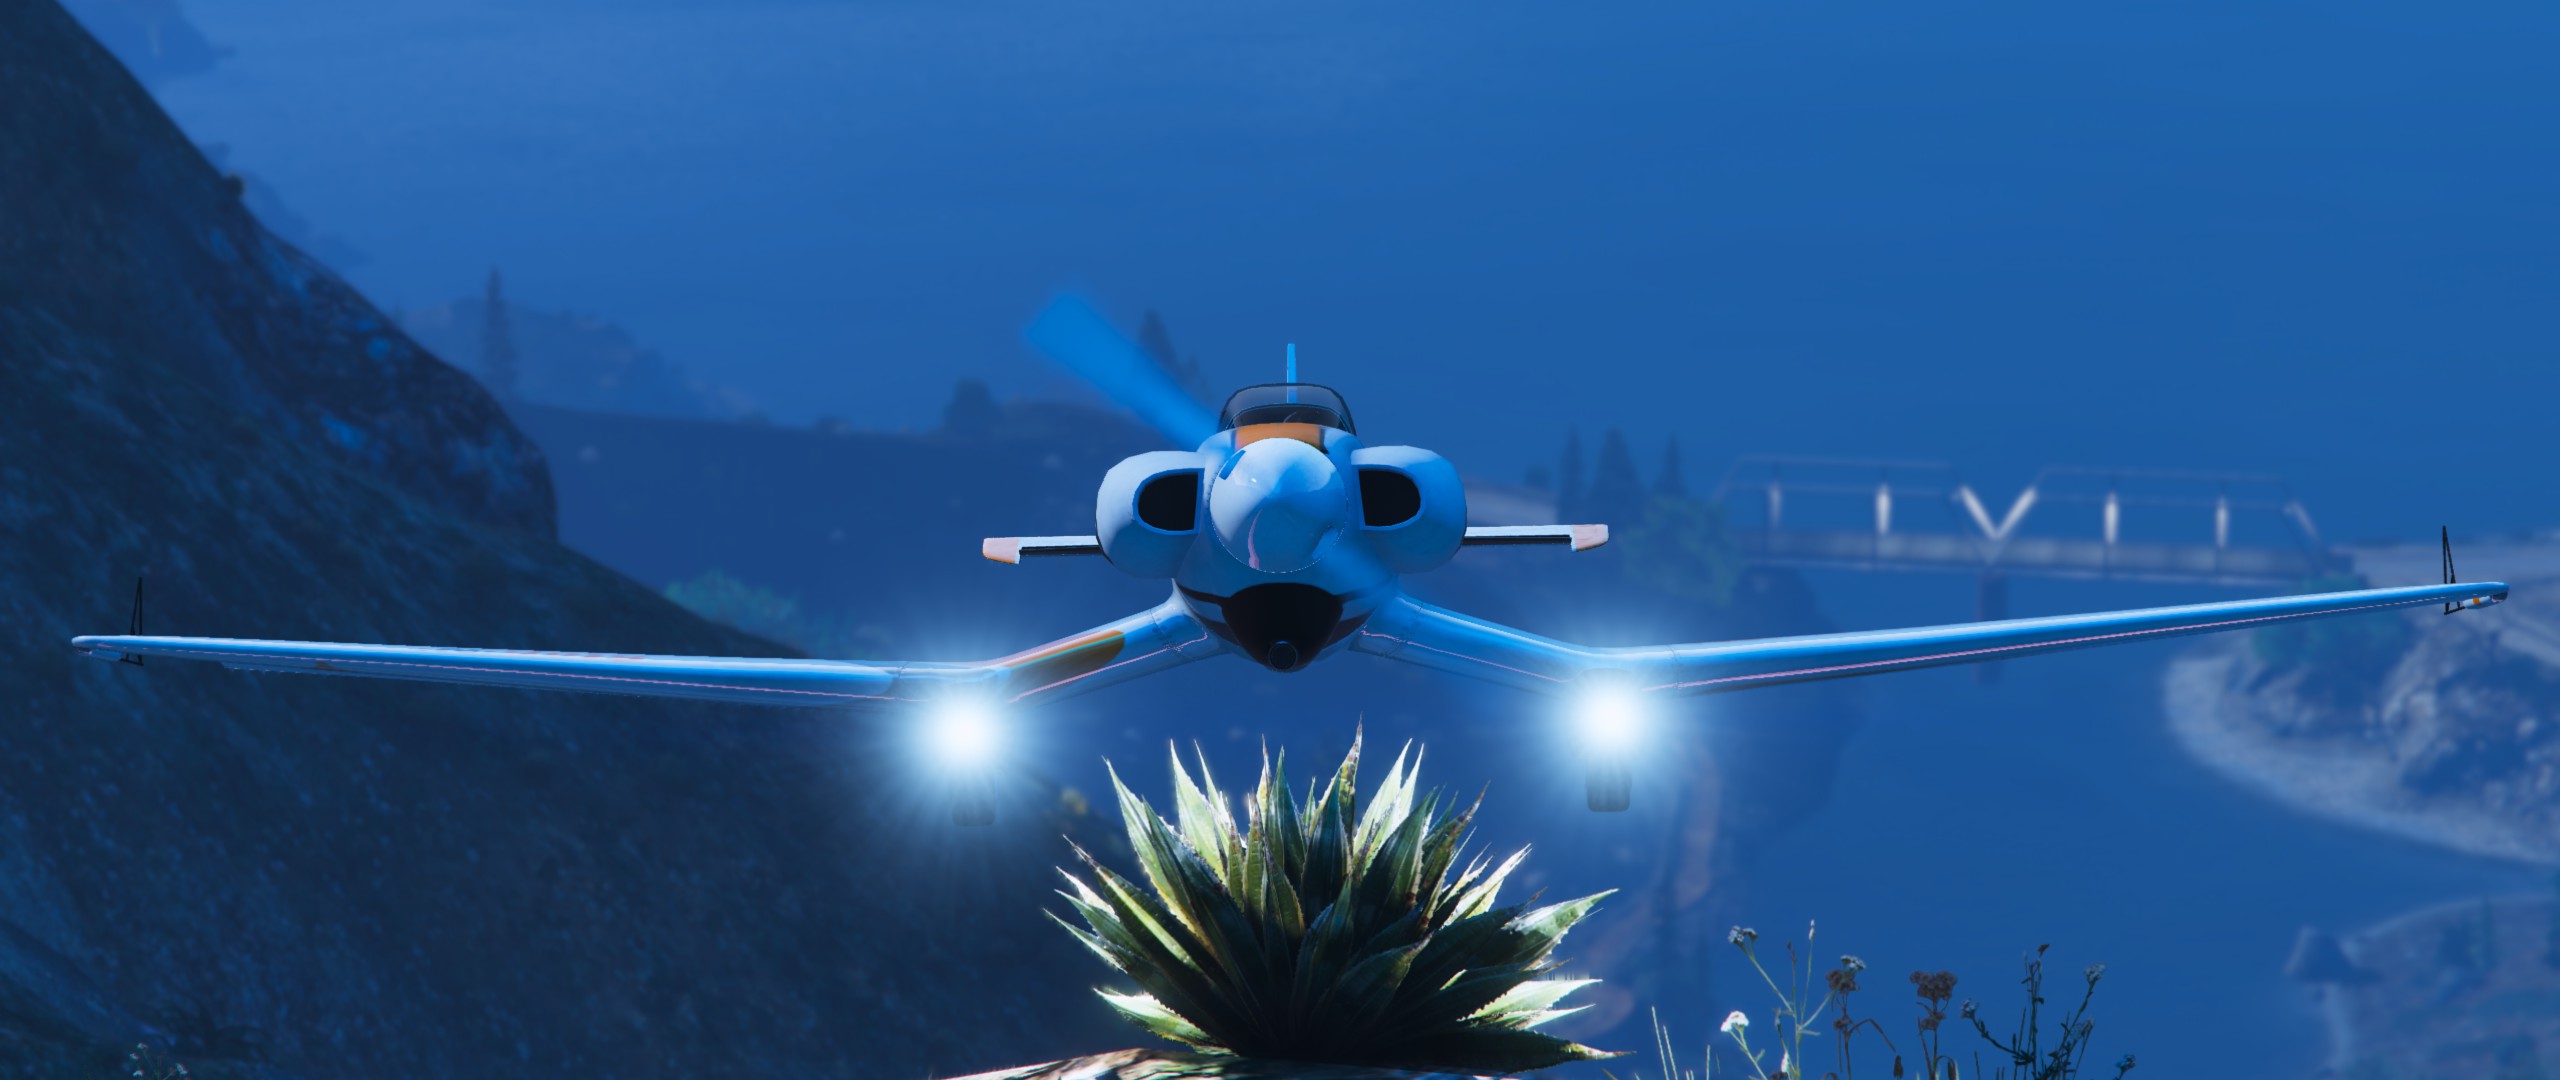 Grand Theft Auto V Planes Rockstar Games CGi Aircraft Bridge Video Games 2560x1080